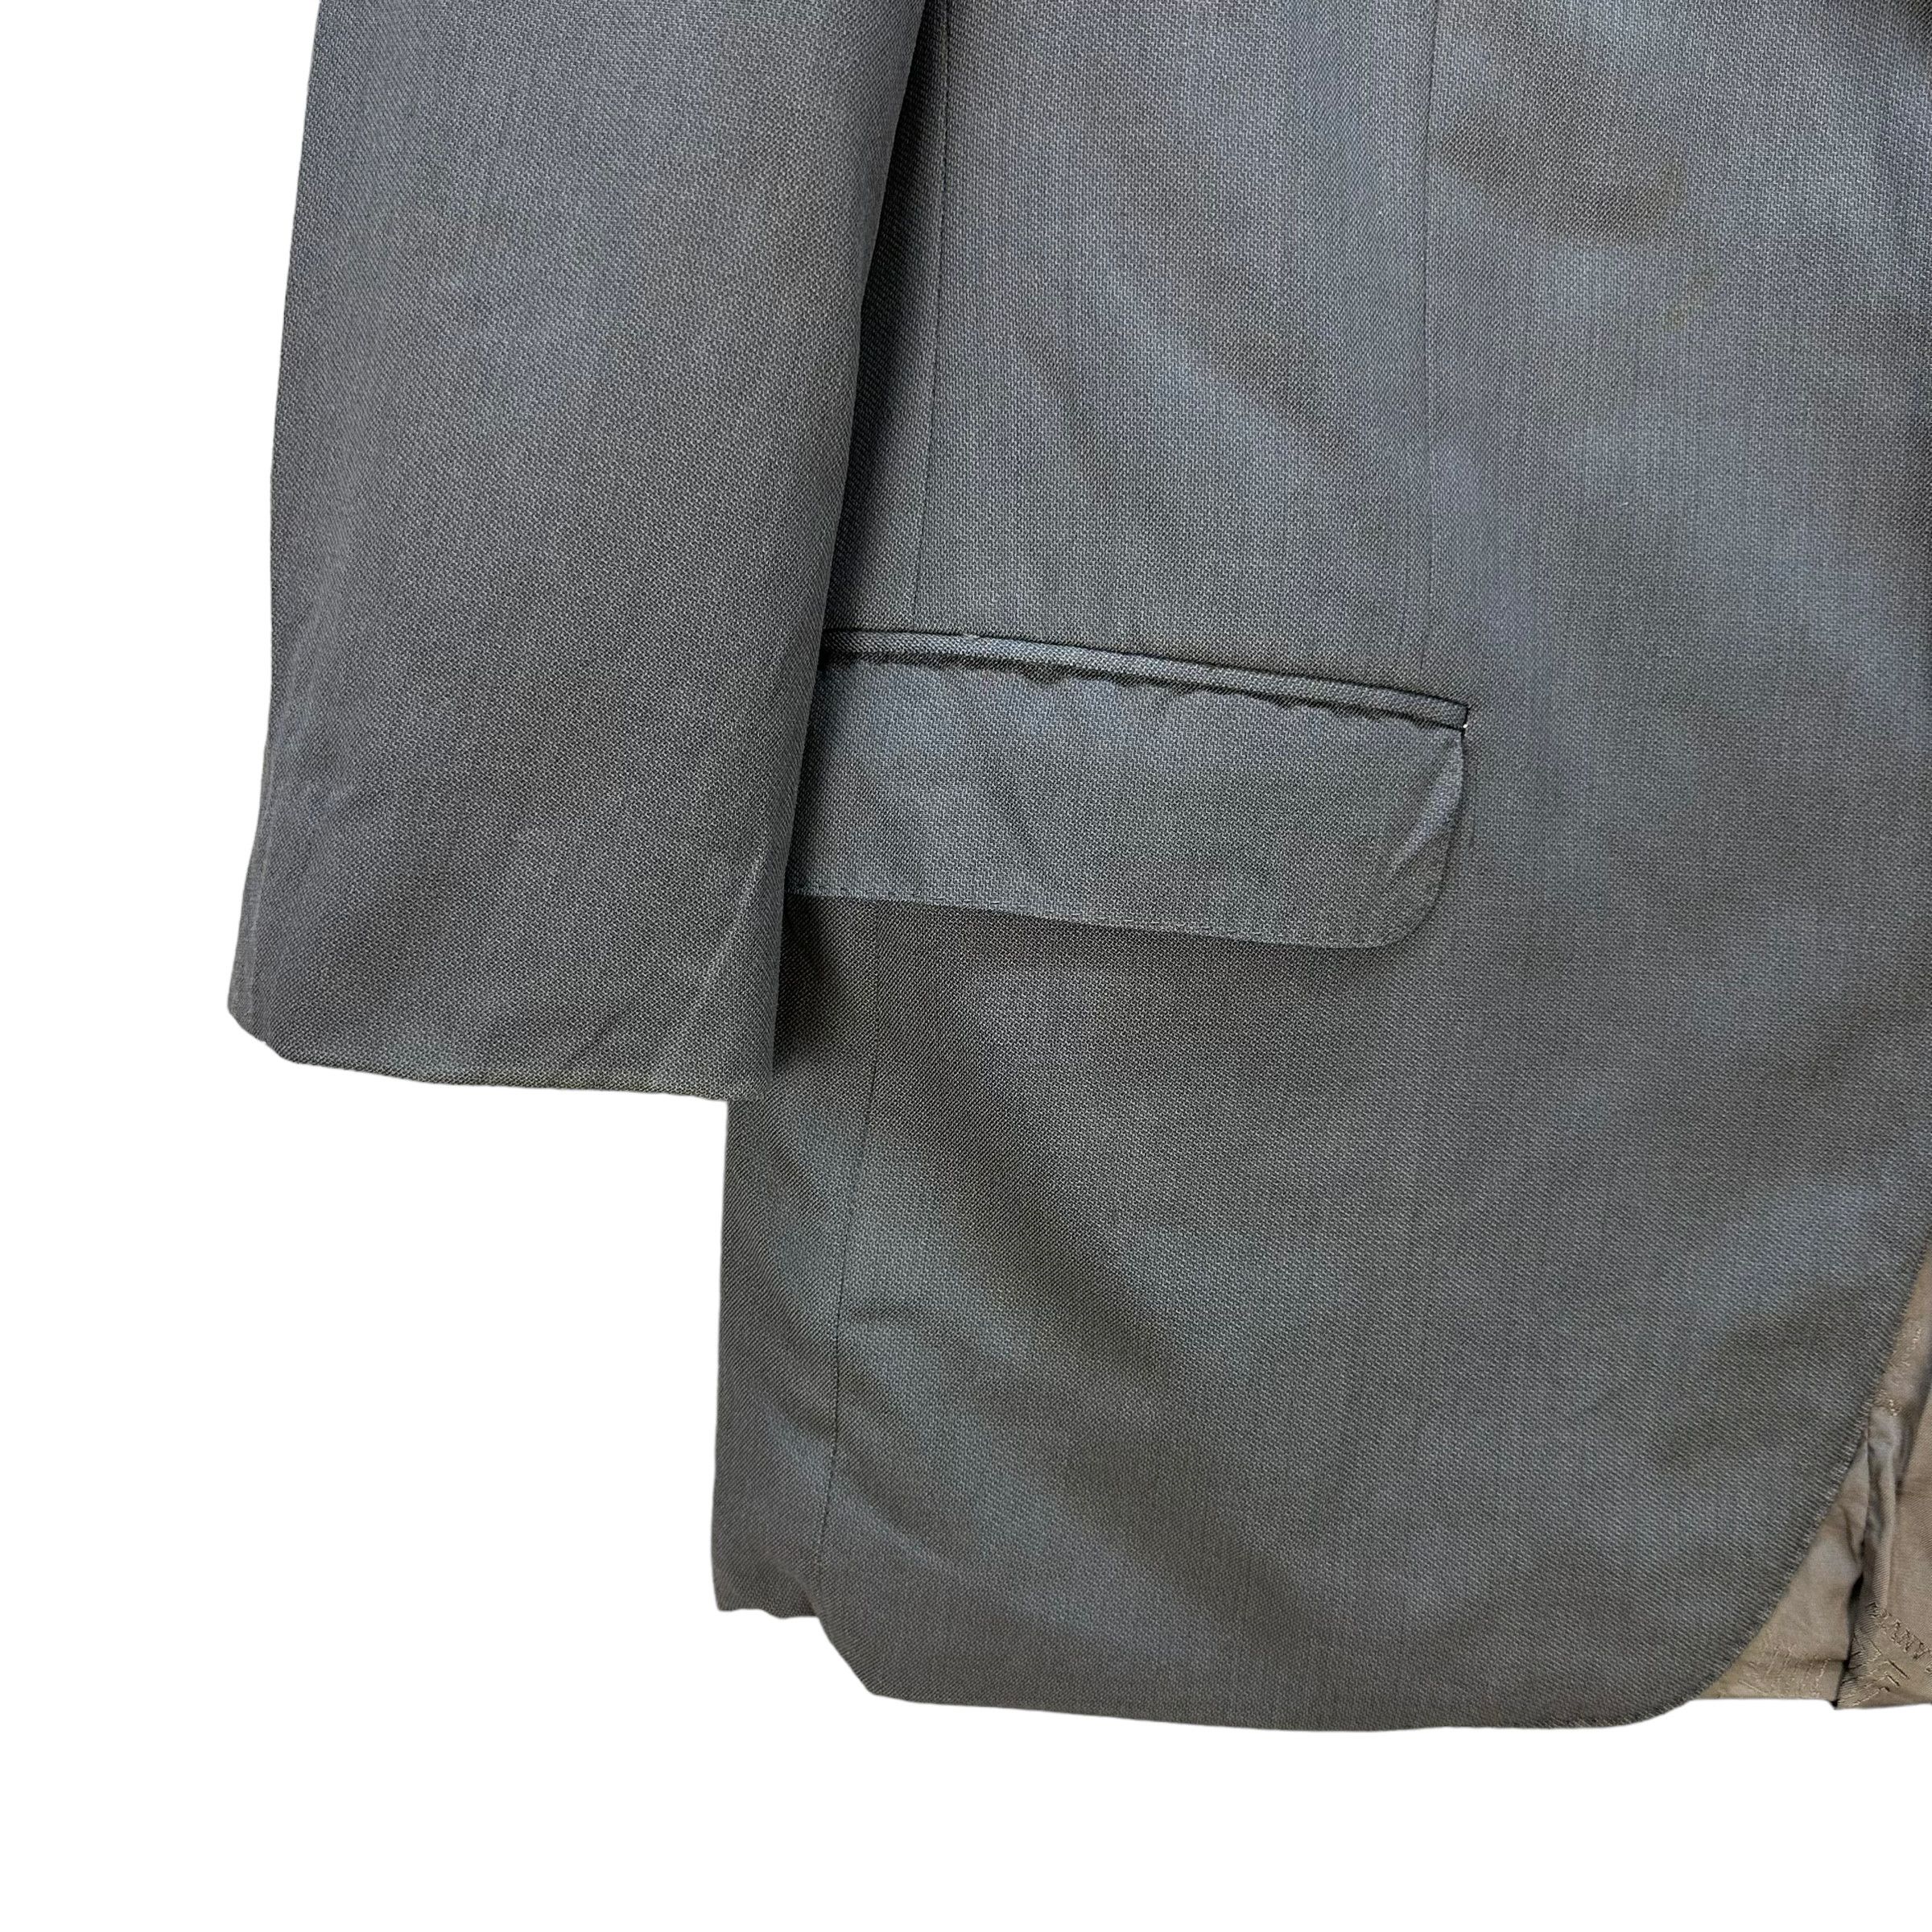 Lanvin Paris Suit Jacket / Blazer #9139-61 - 4